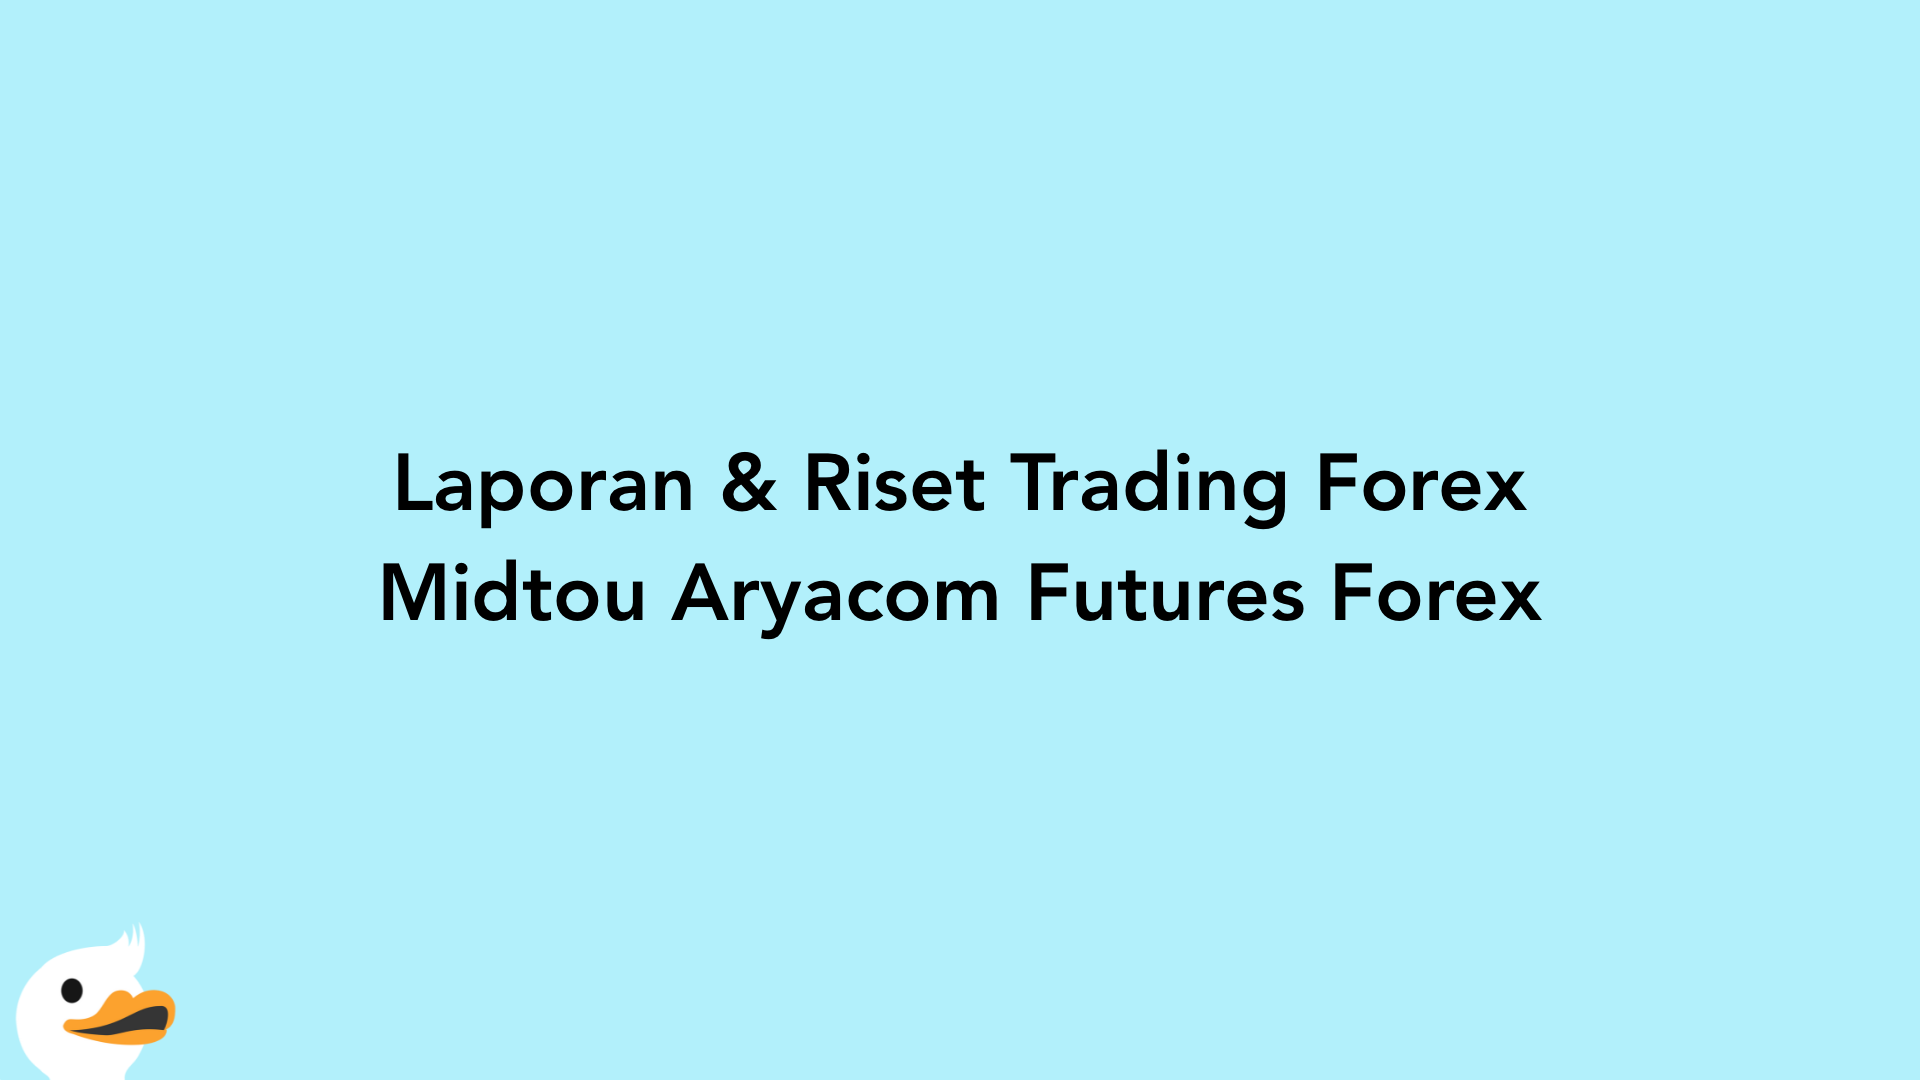 Laporan & Riset Trading Forex Midtou Aryacom Futures Forex